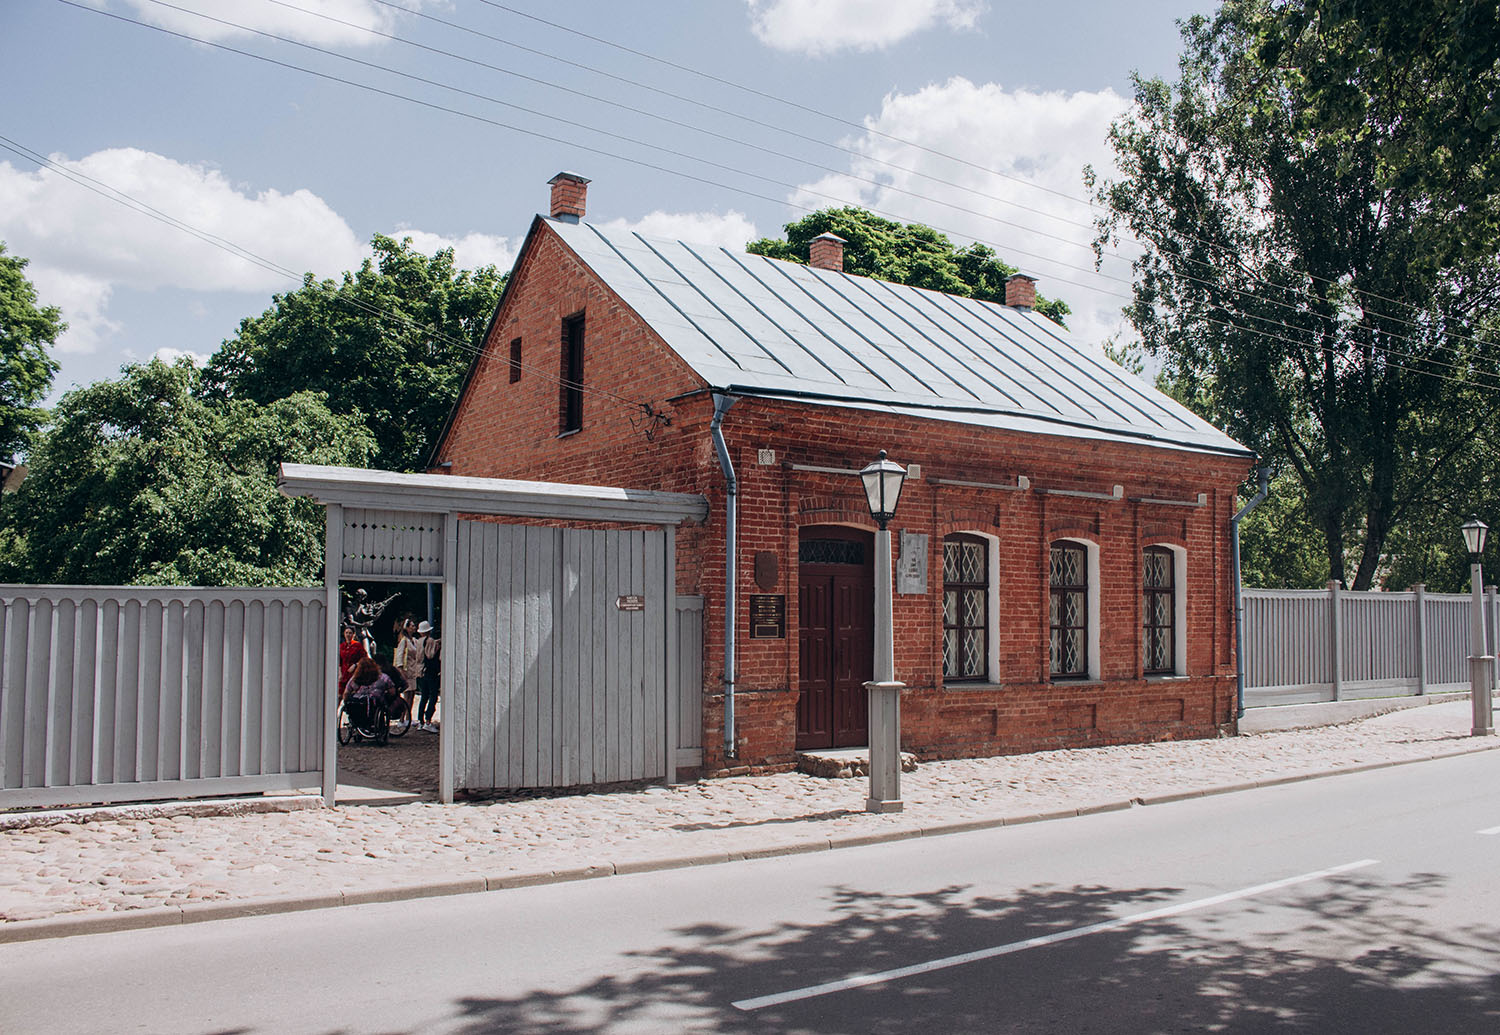 Ул шагала. Витебск улица Кондратьева 11 дом-музей марка Шагала. Дом в Витебске, в котором родился Клейн.